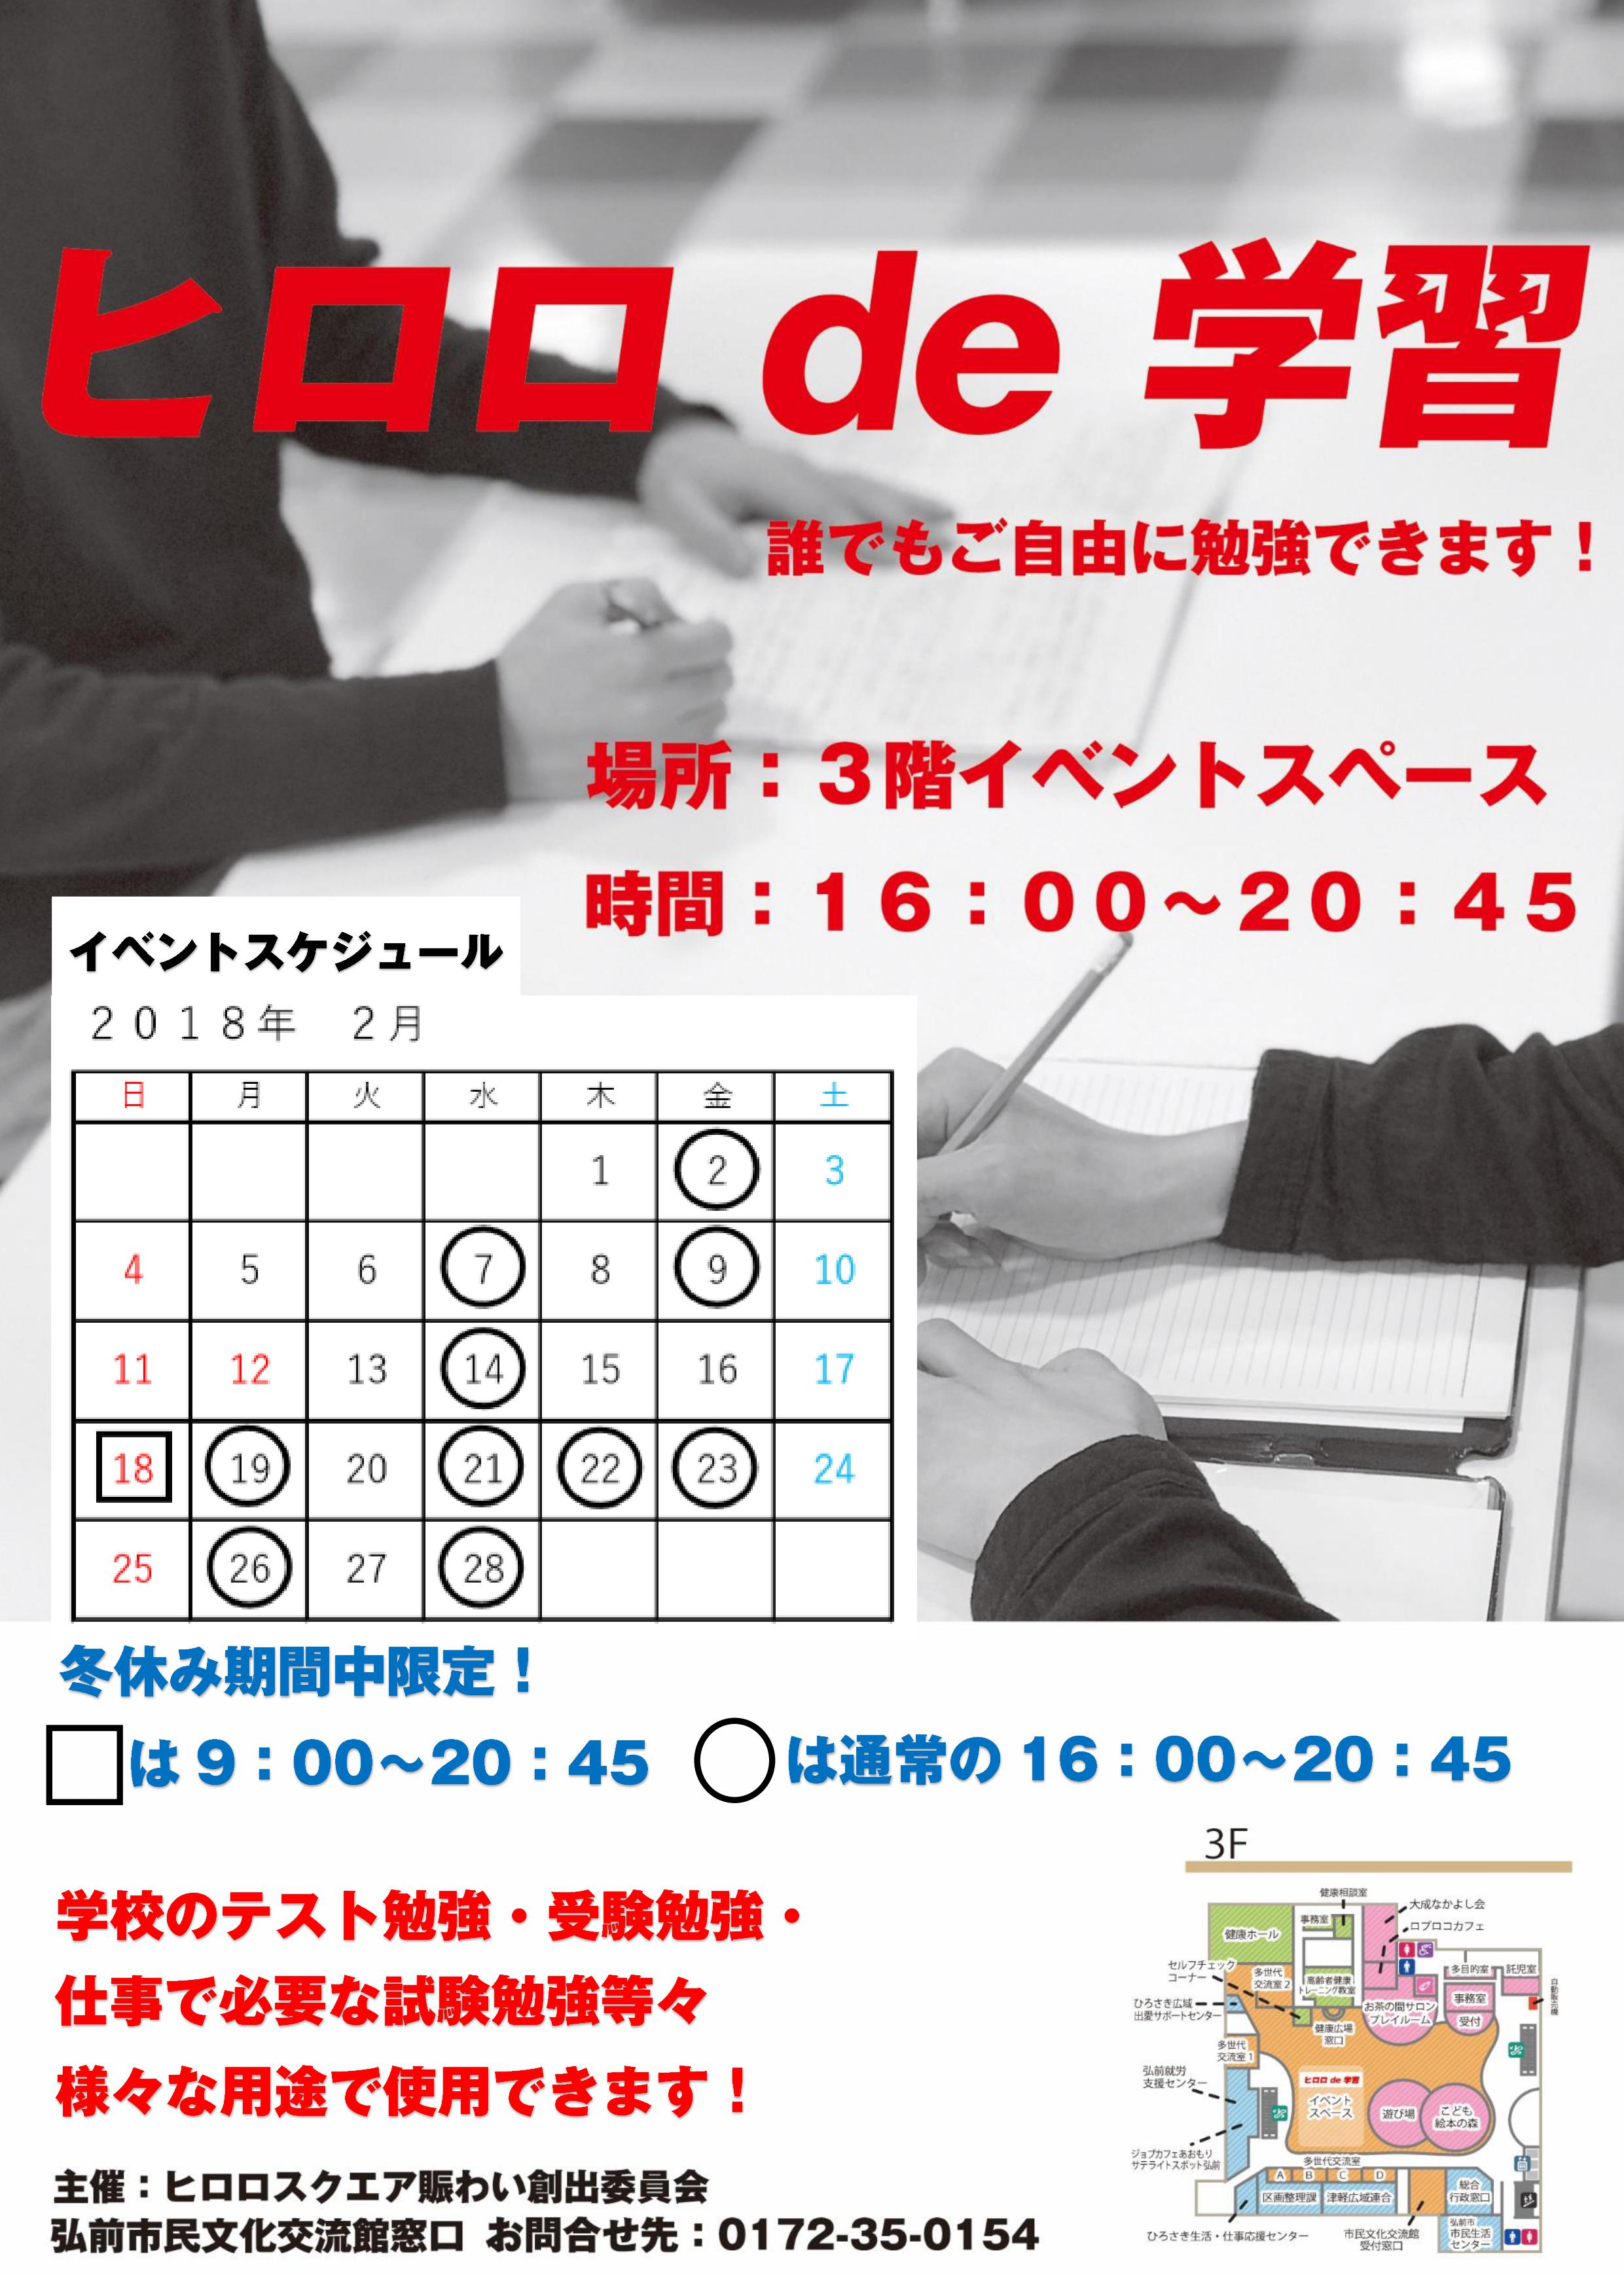 ヒロロde学習2月用チラシ.jpg